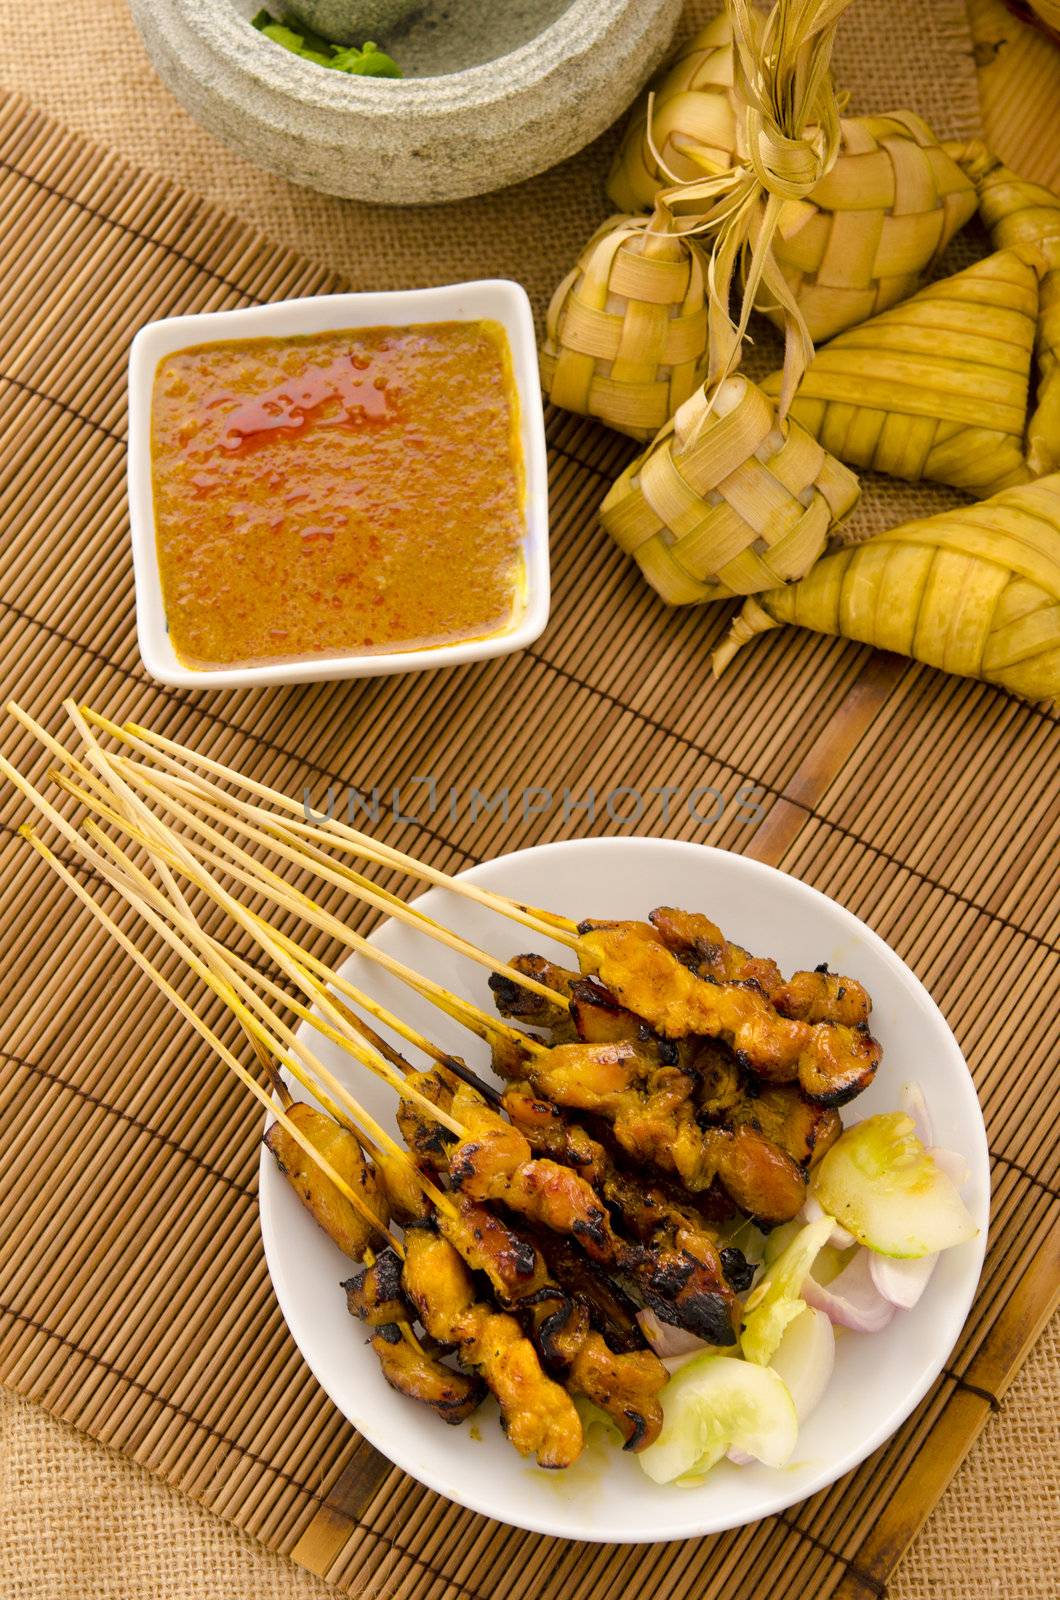 satay malay hari raya foods by yuliang11